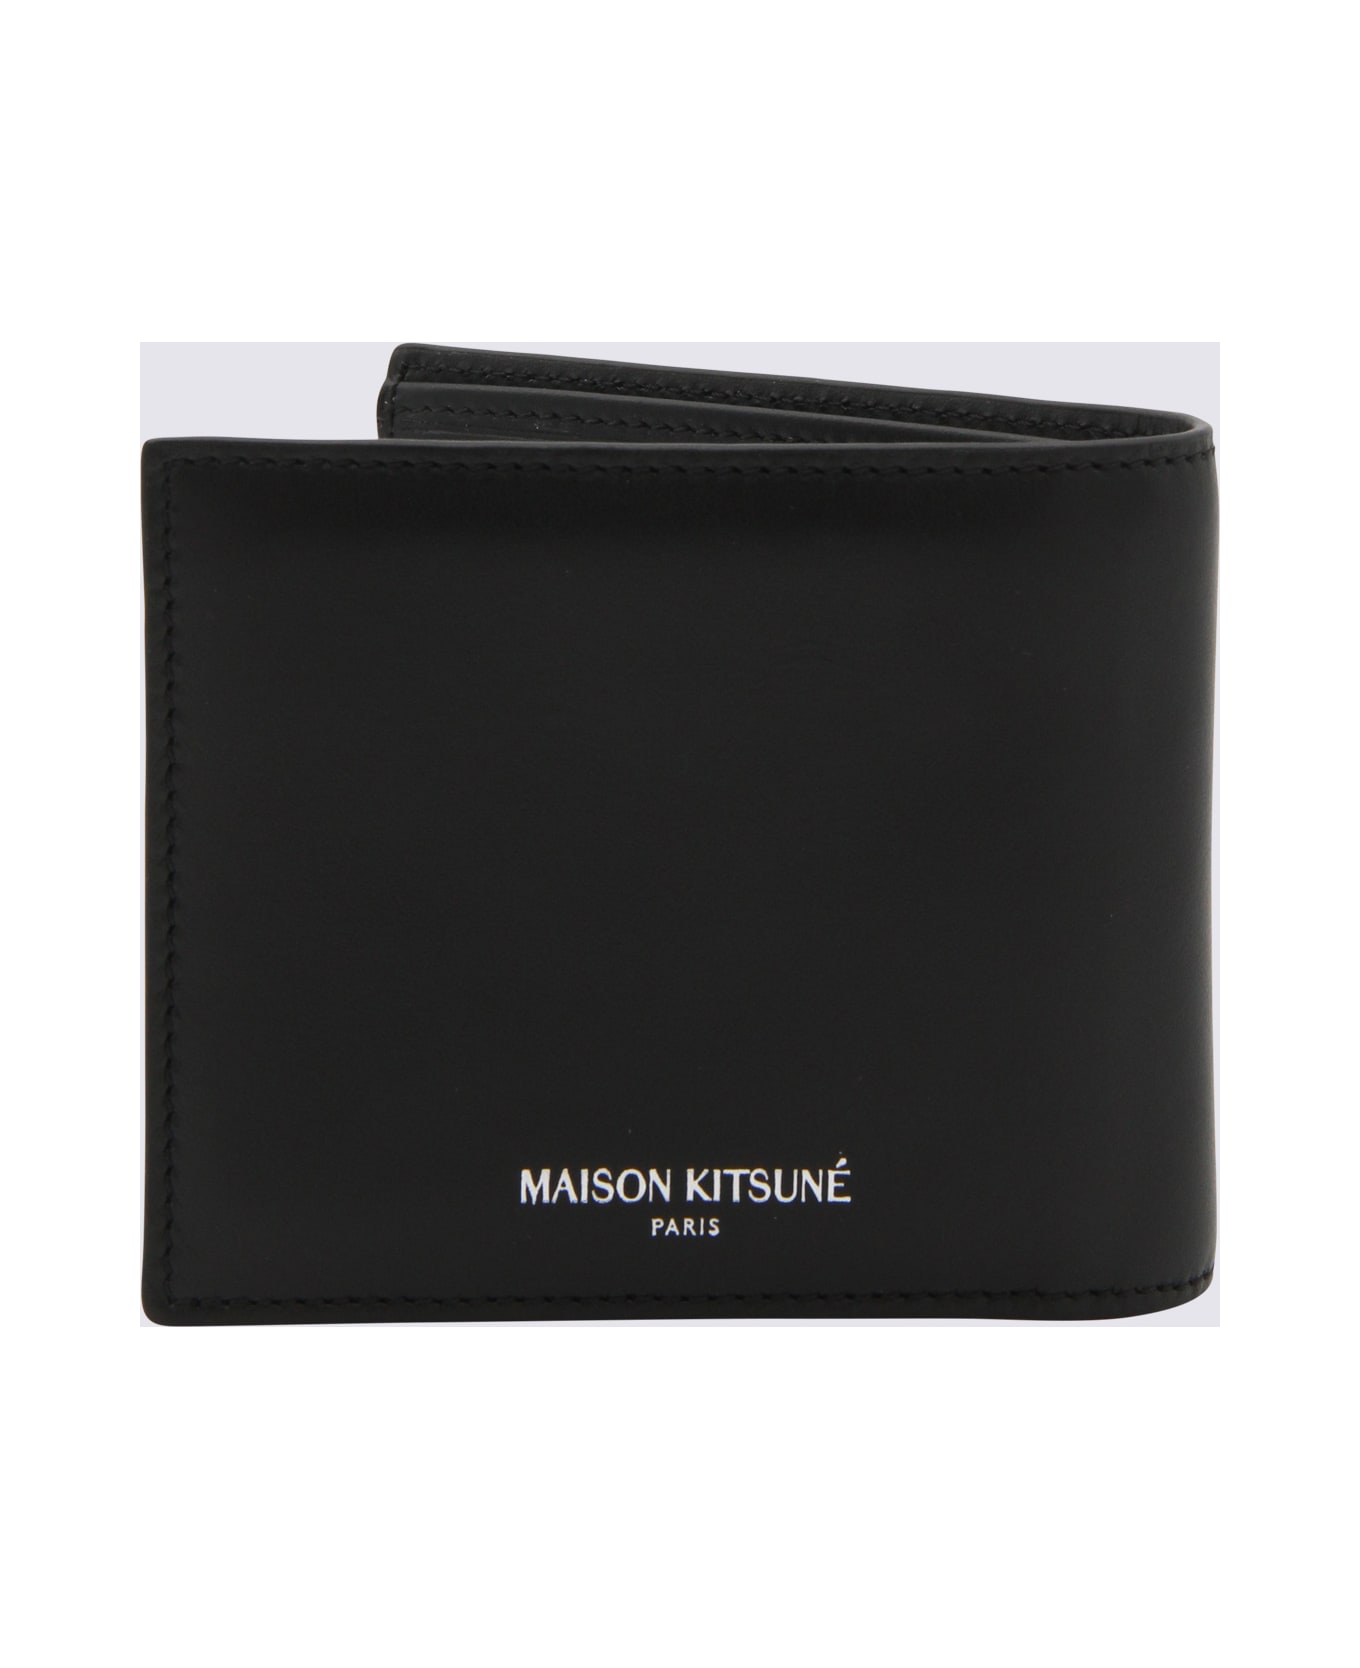 Maison Kitsuné Black Leather Wallet - Black 財布